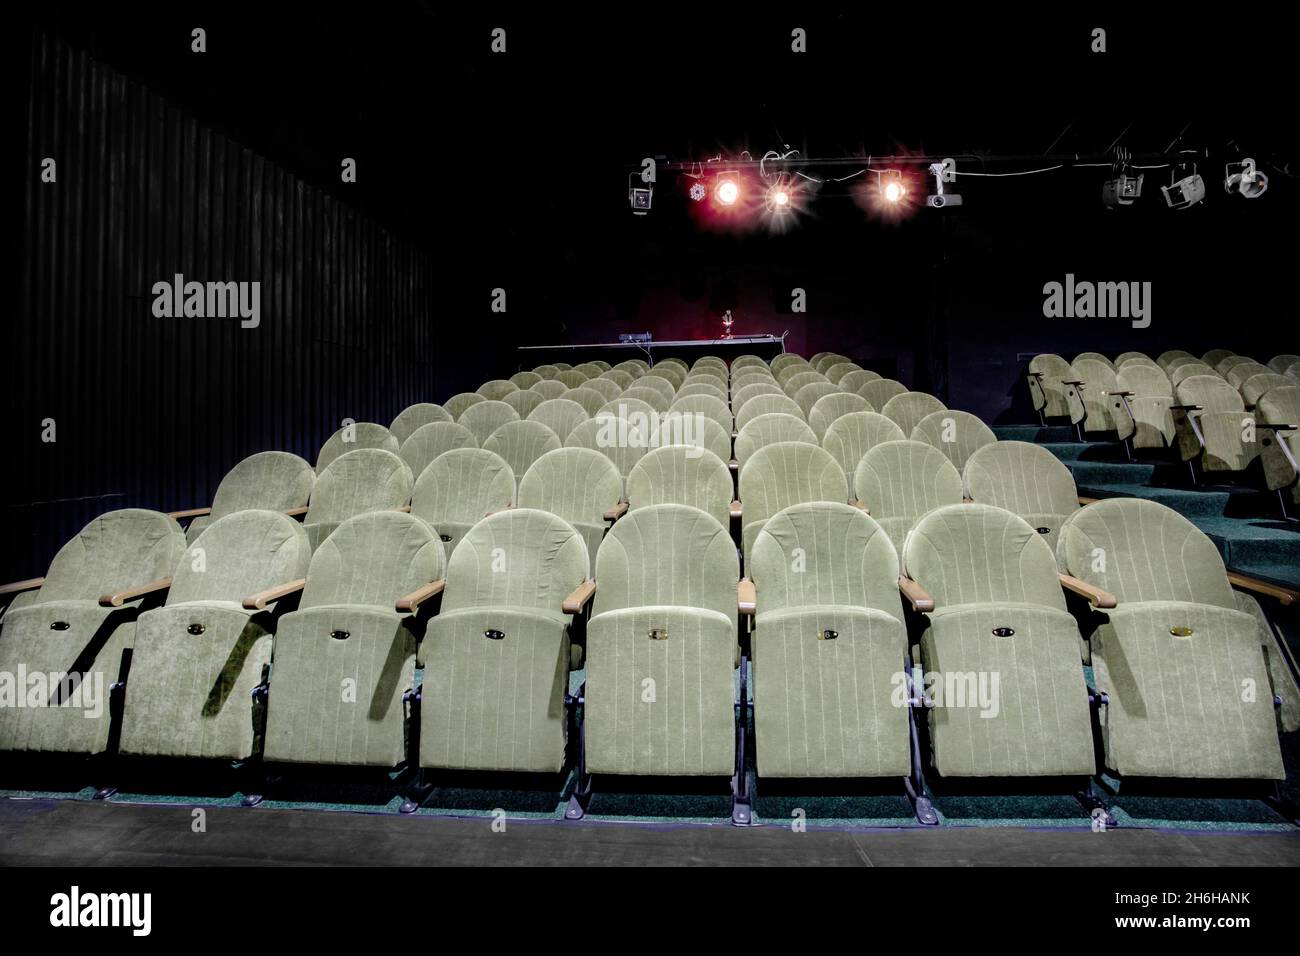 Image d'un petit auditorium avec fauteuils verts Banque D'Images